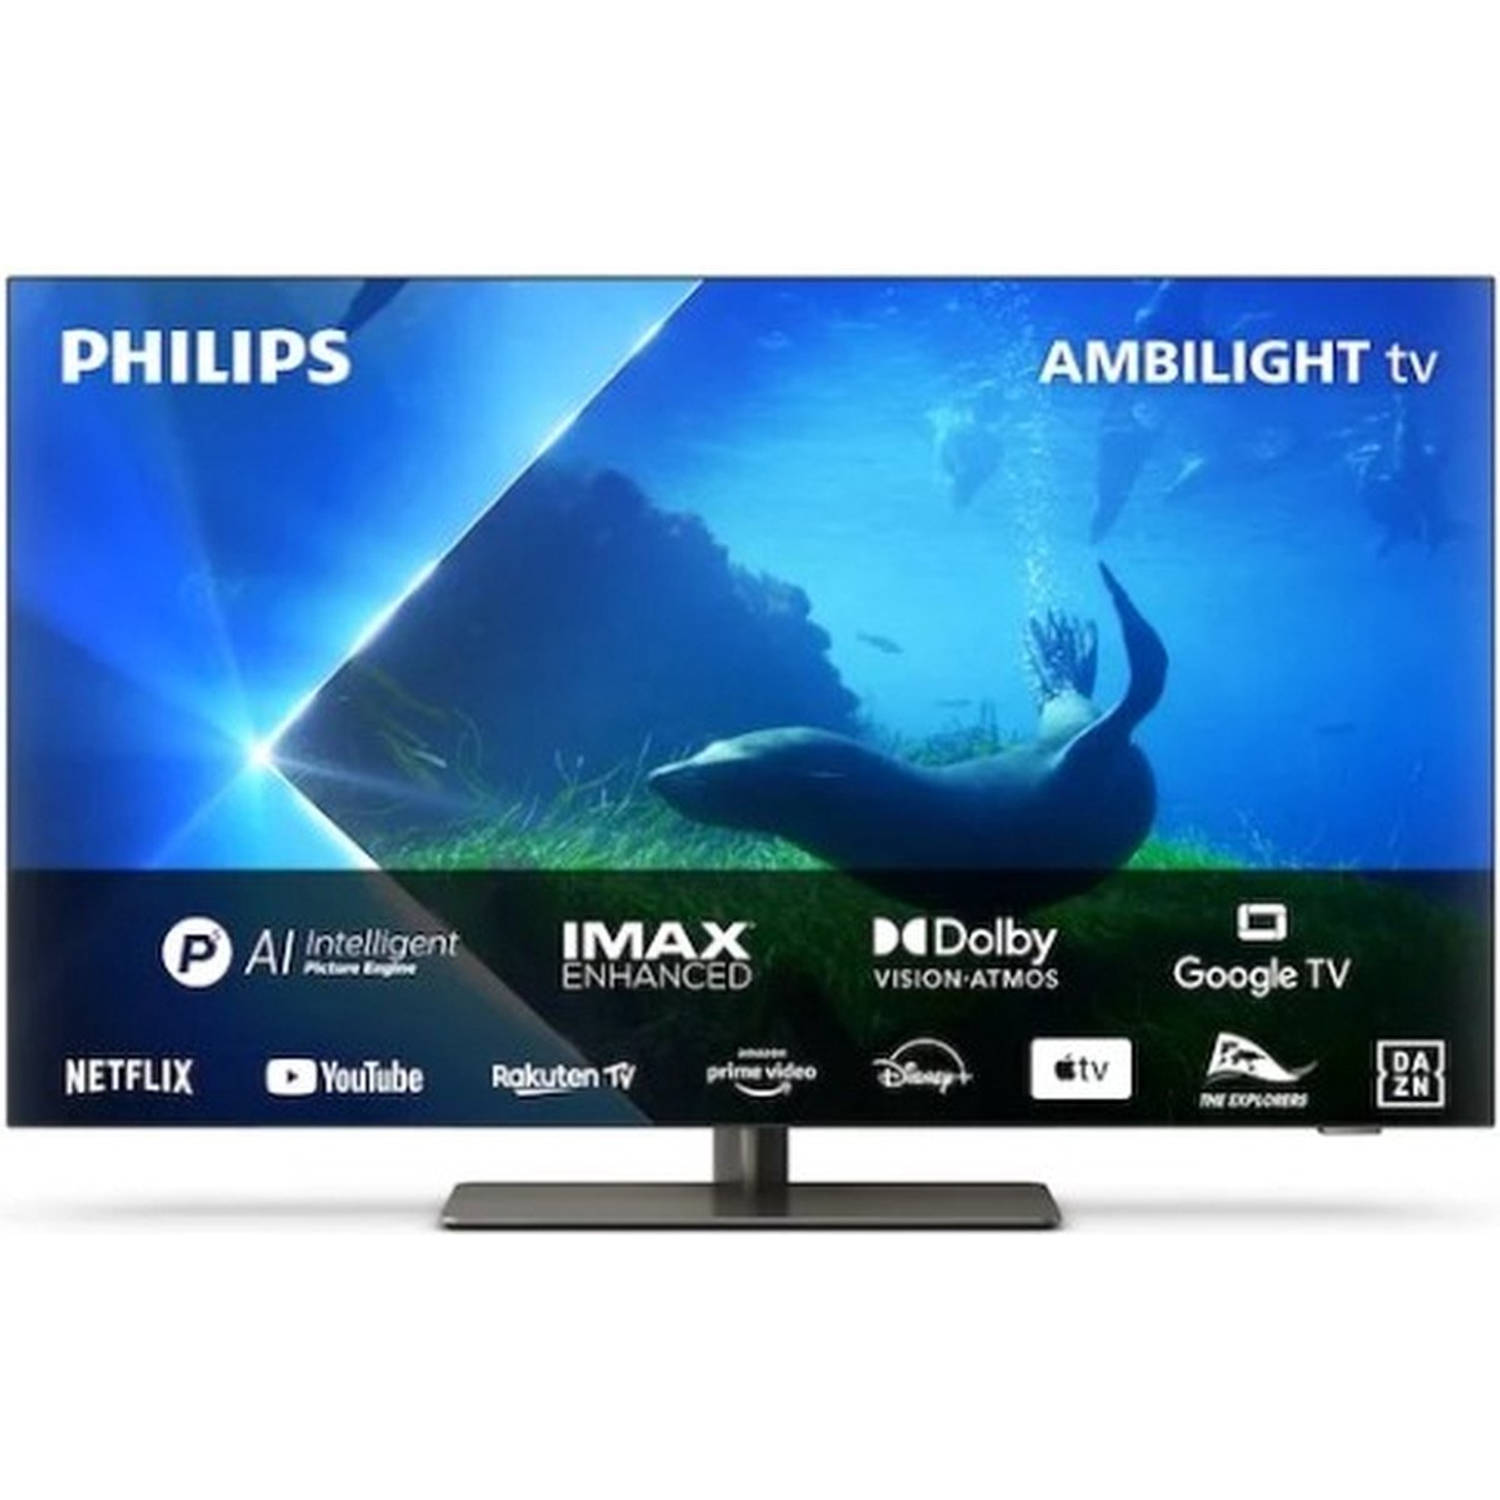 Philips Ambilight 65OLED848-12 OLED 4K TV